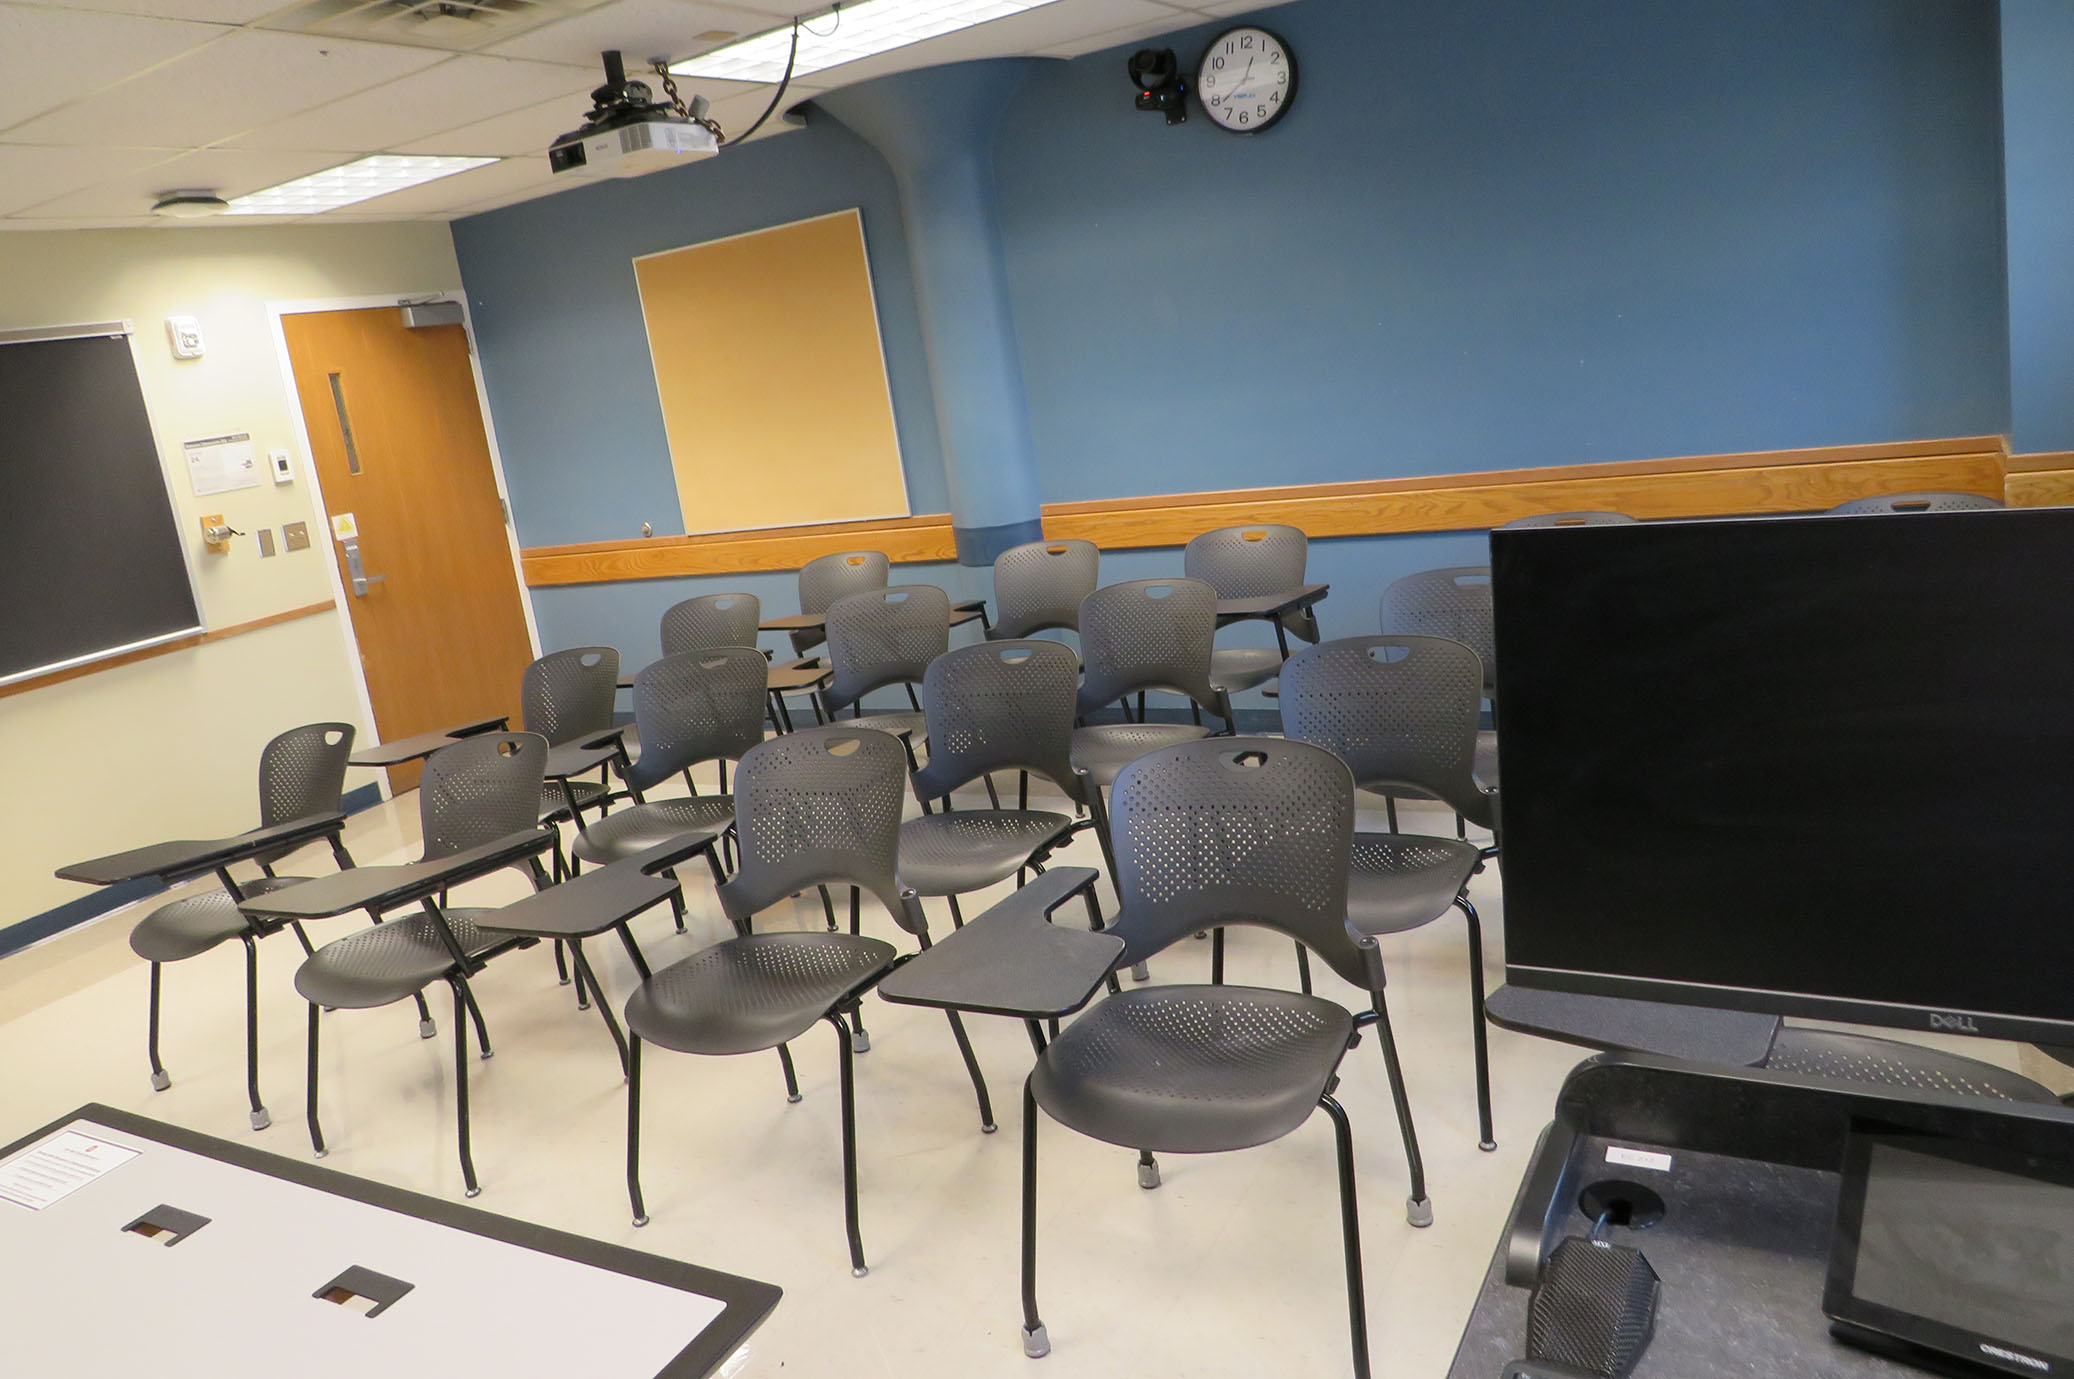 Enarson Classroom Building Room 212